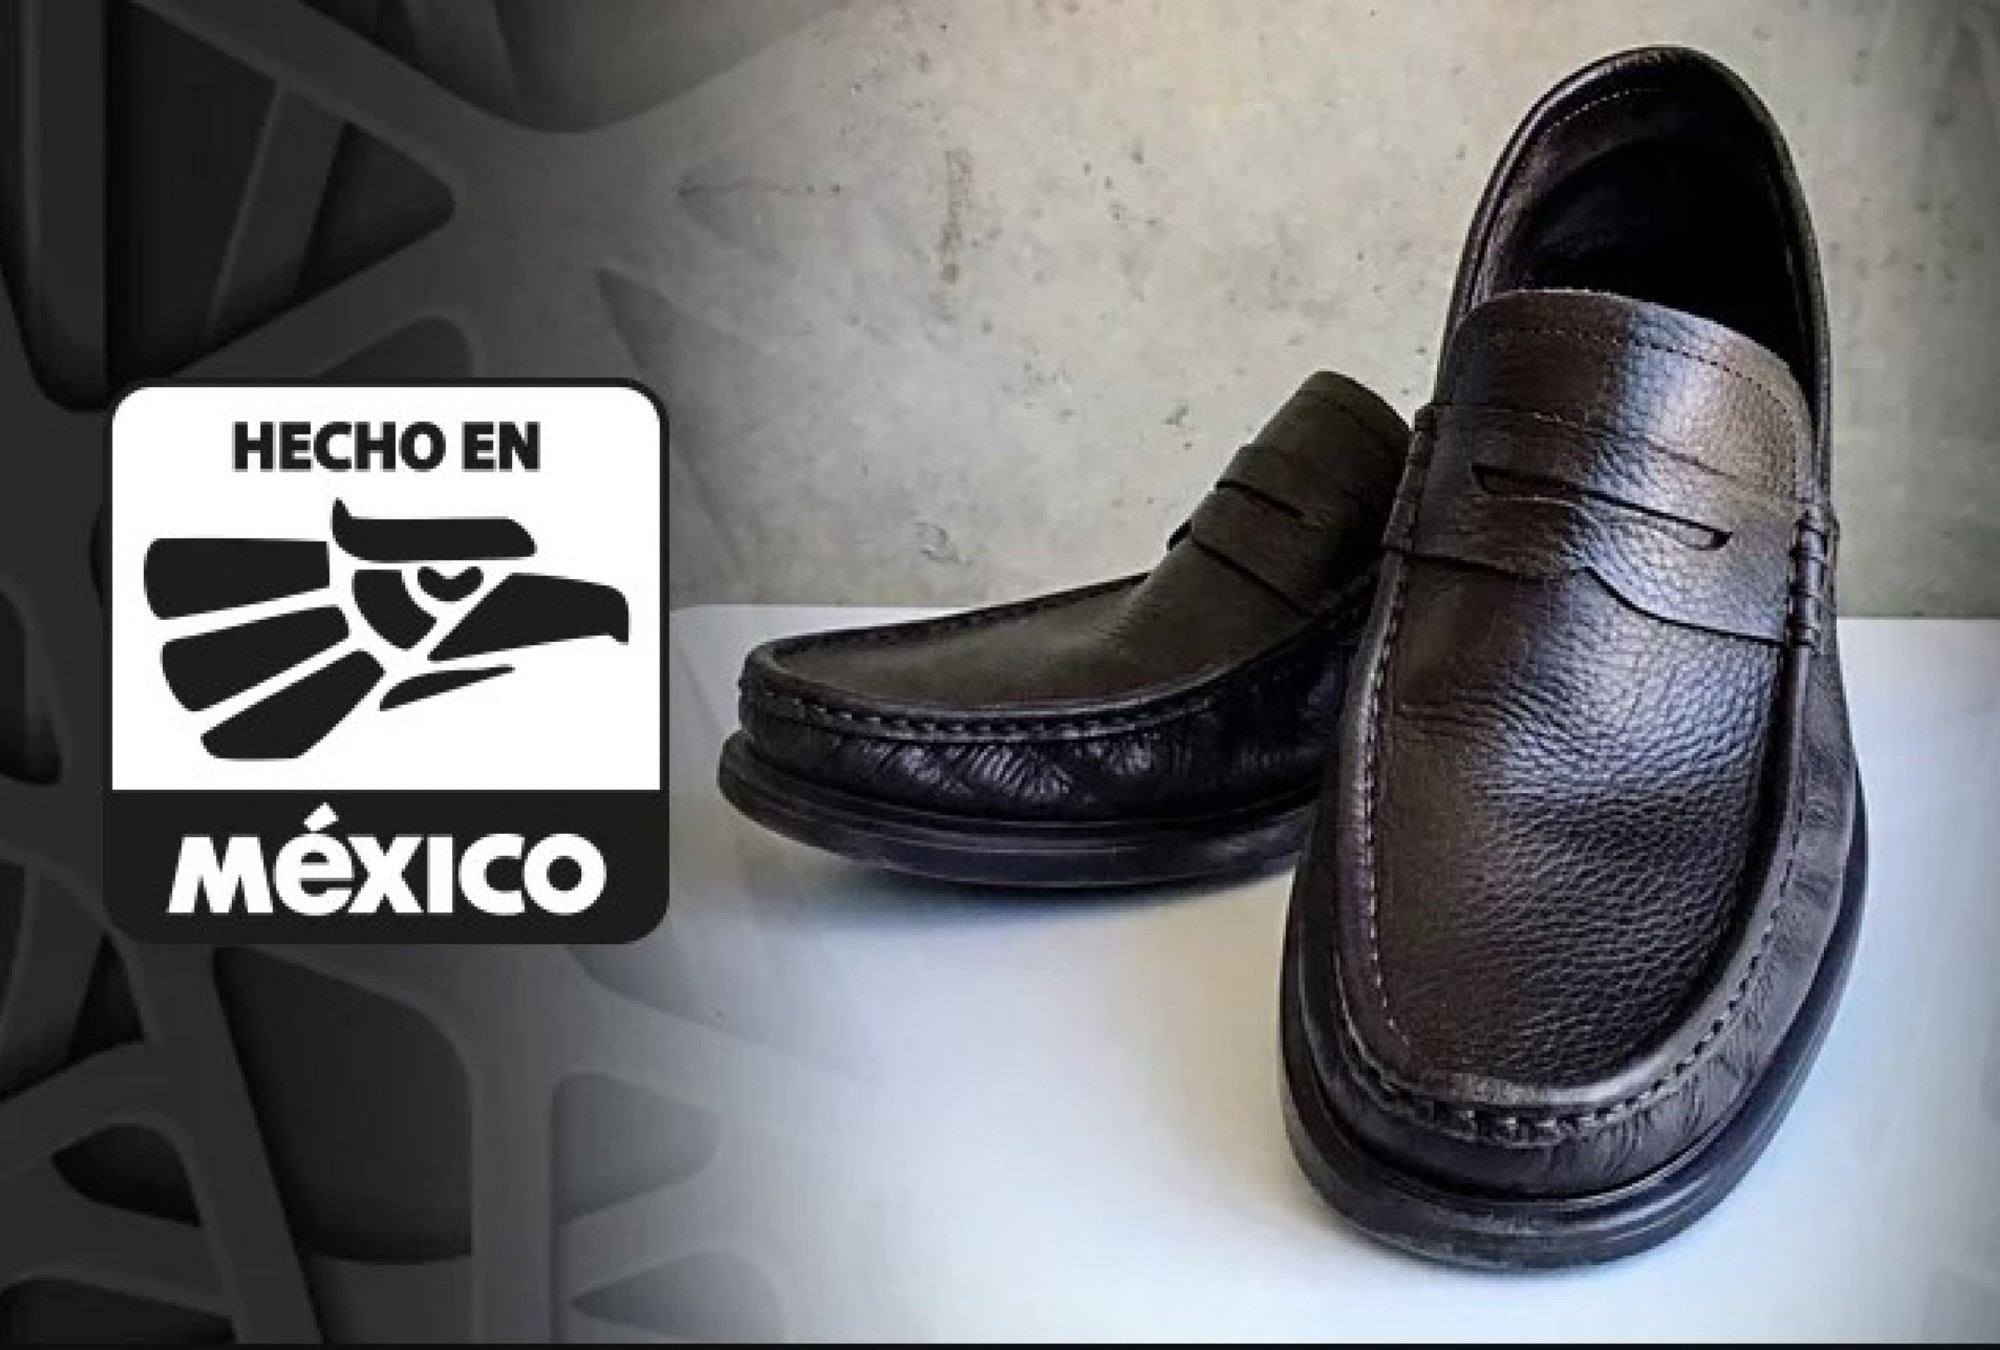 Conoce la historia del logo 'Hecho en México'.